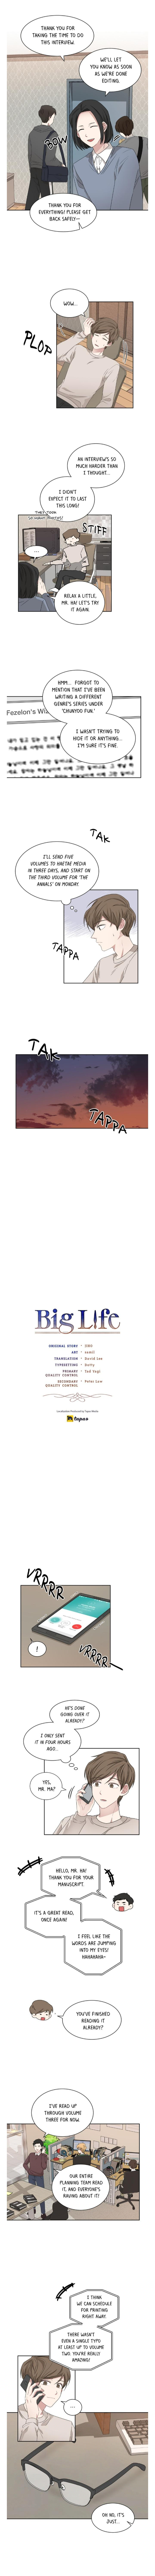 Big Life - Page 1